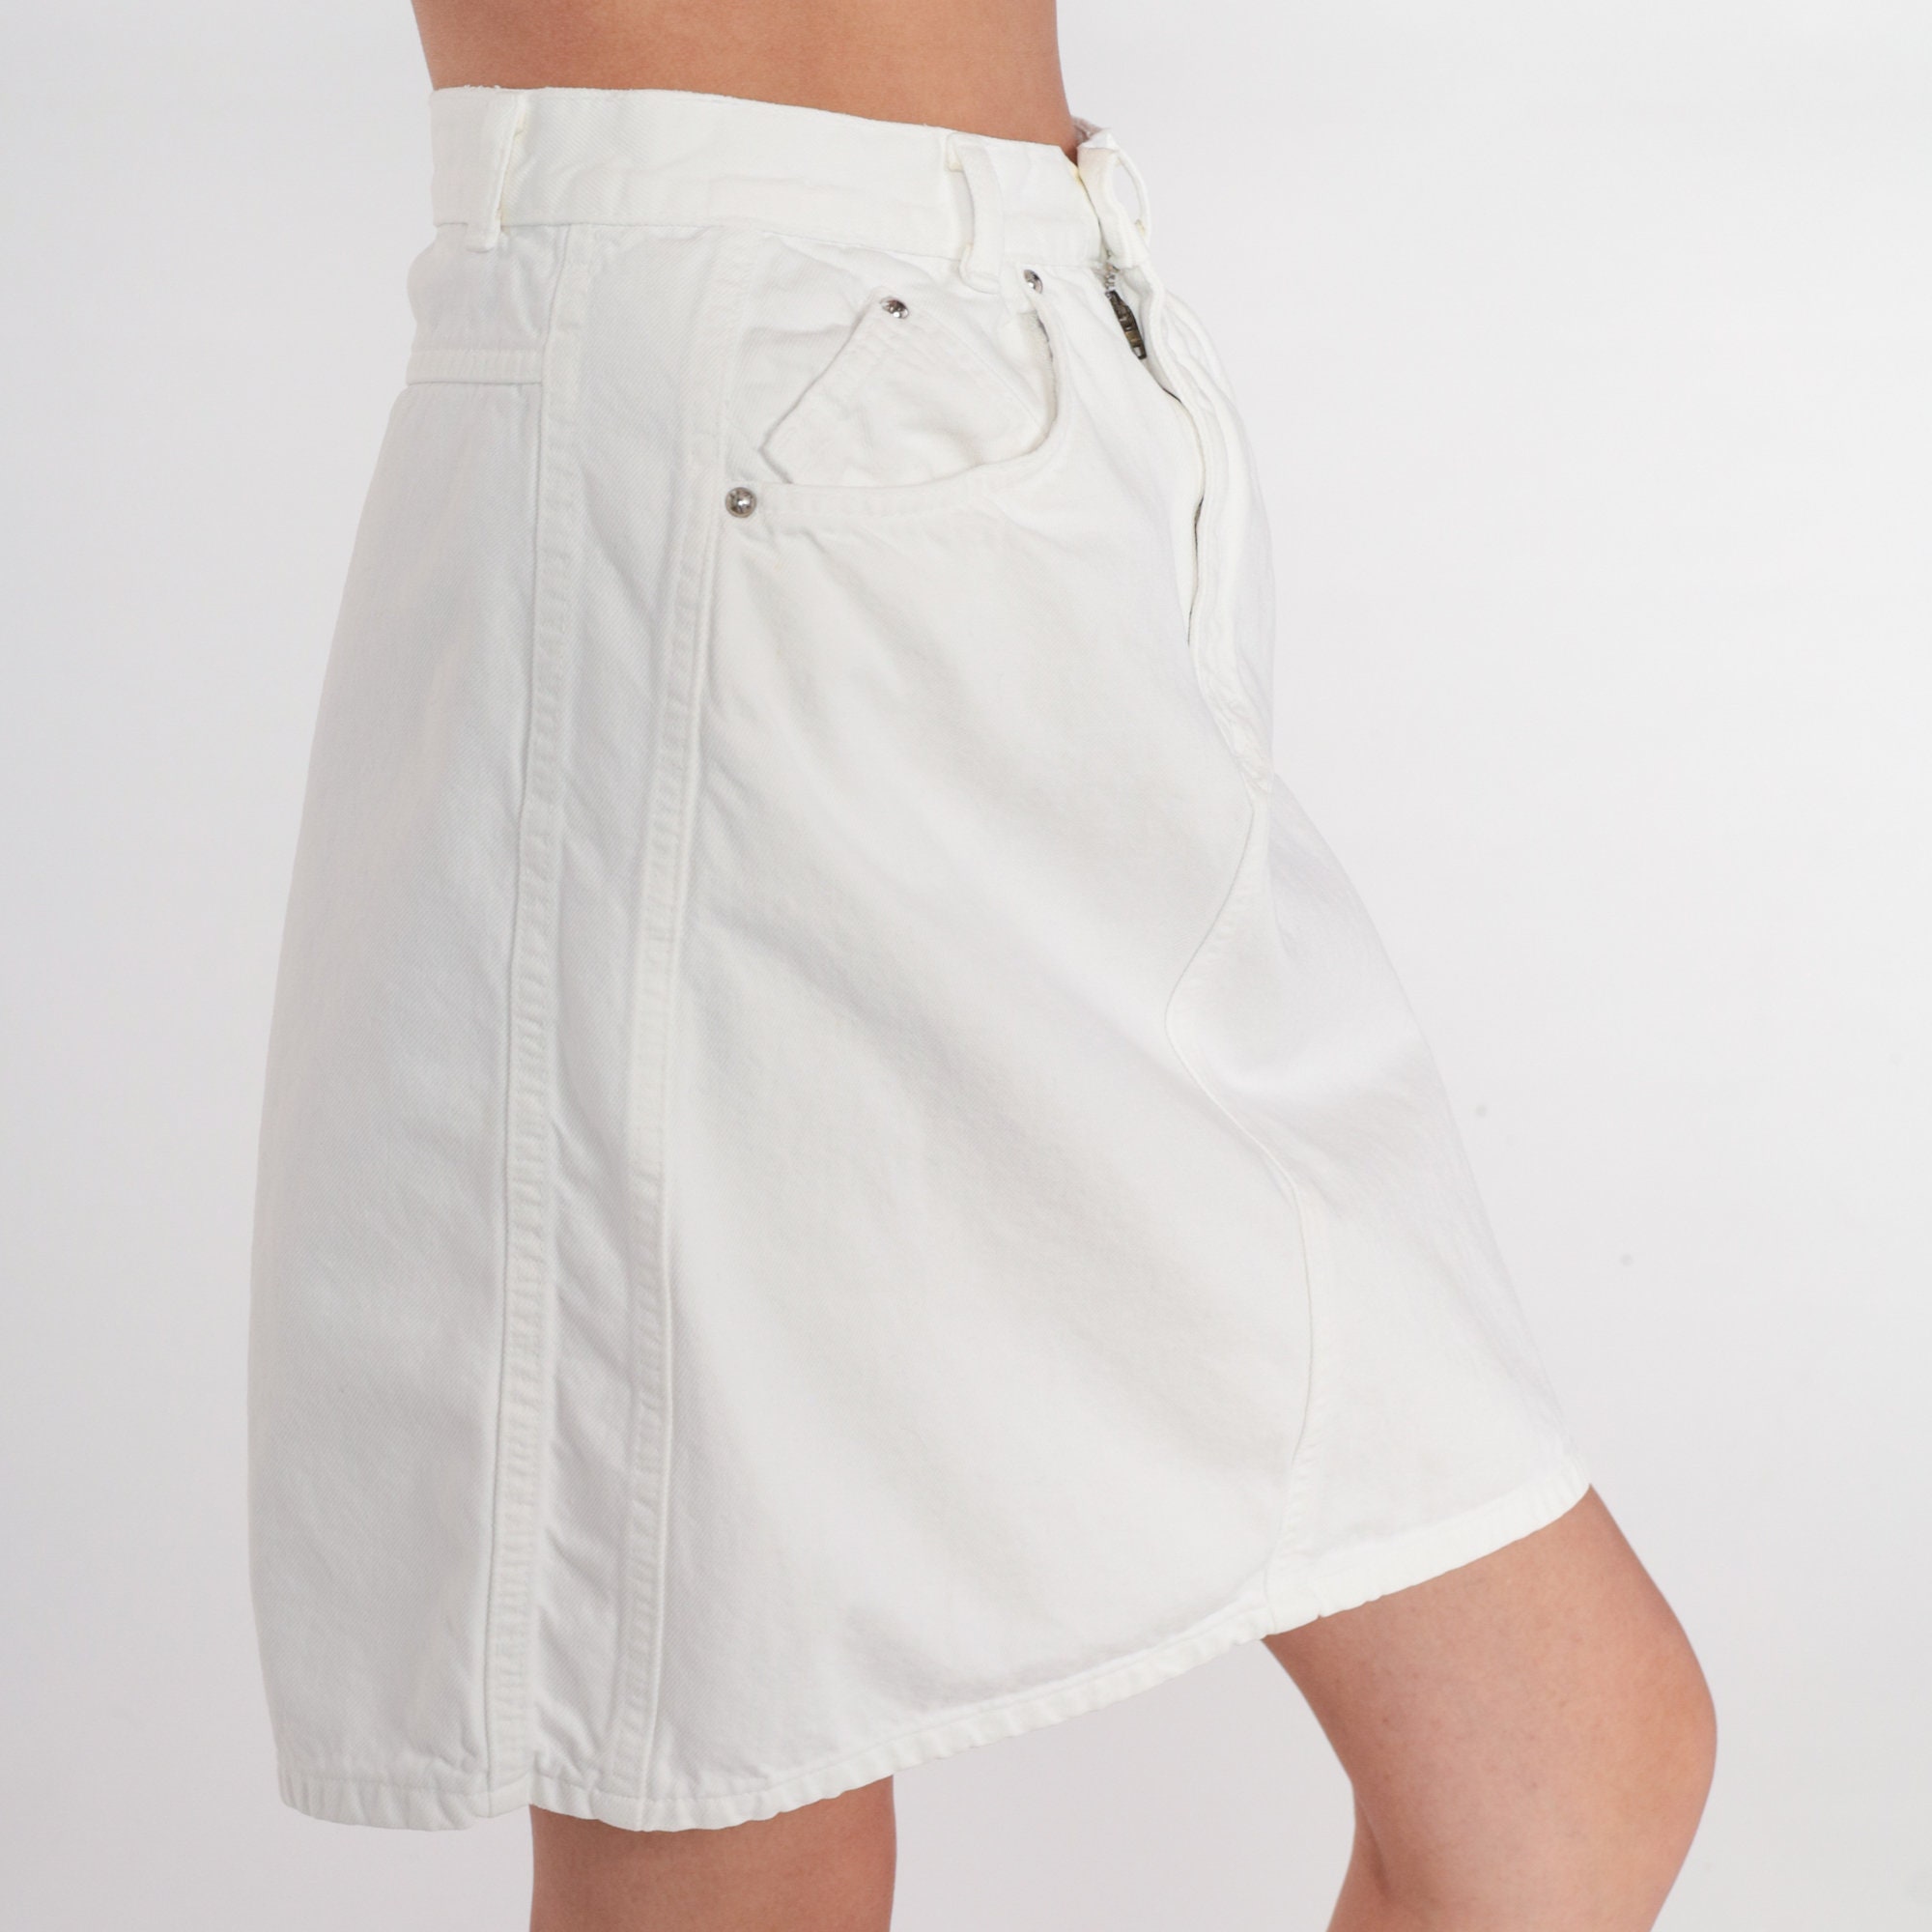 Christian Wijnants Sadiq Skirt - White Denim | Garmentory